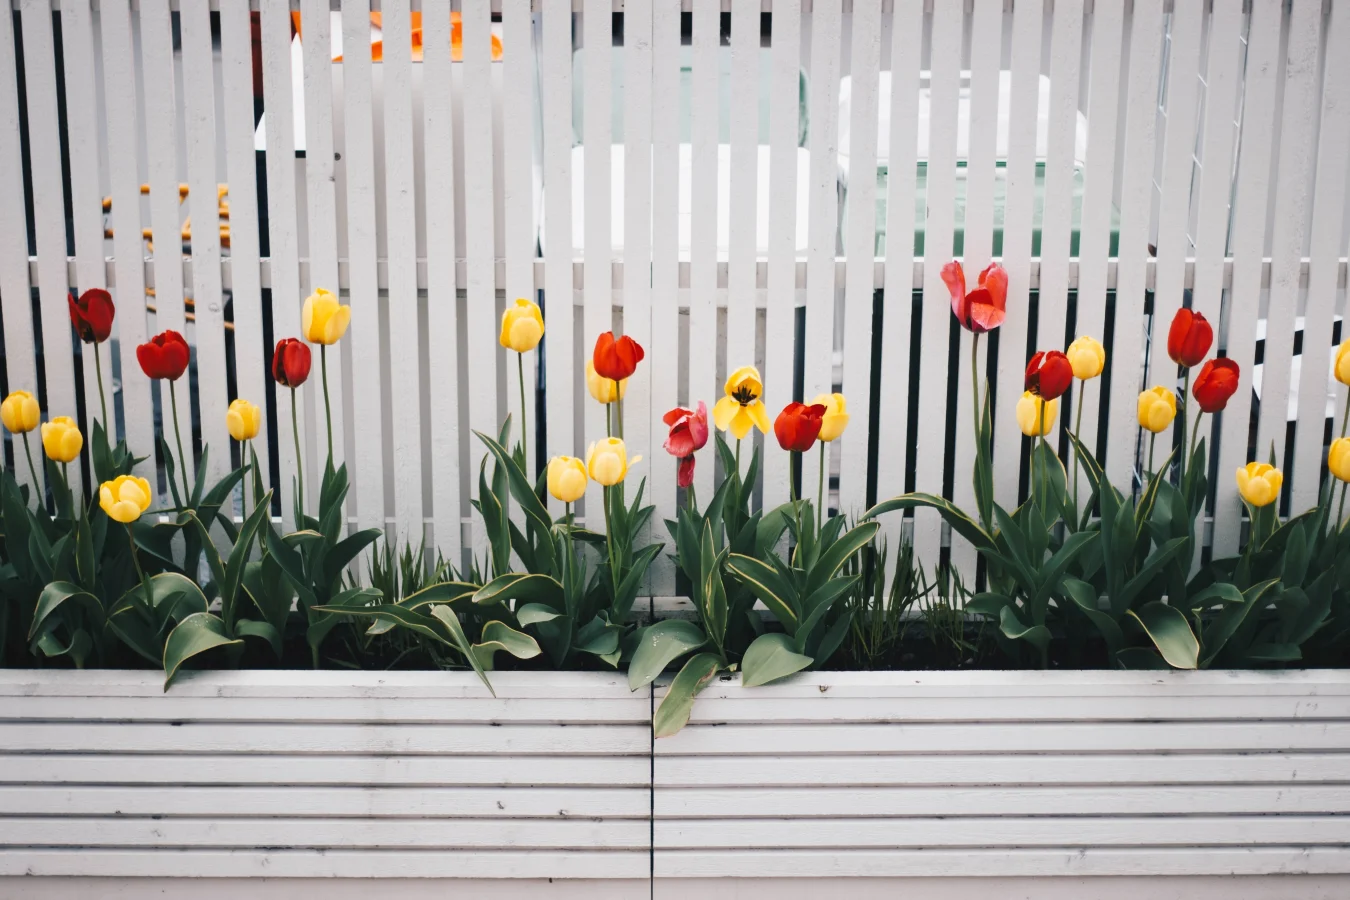 Również tulipany będą wyglądać interesująco, jeśli posadzisz je wzdłuż płotu.